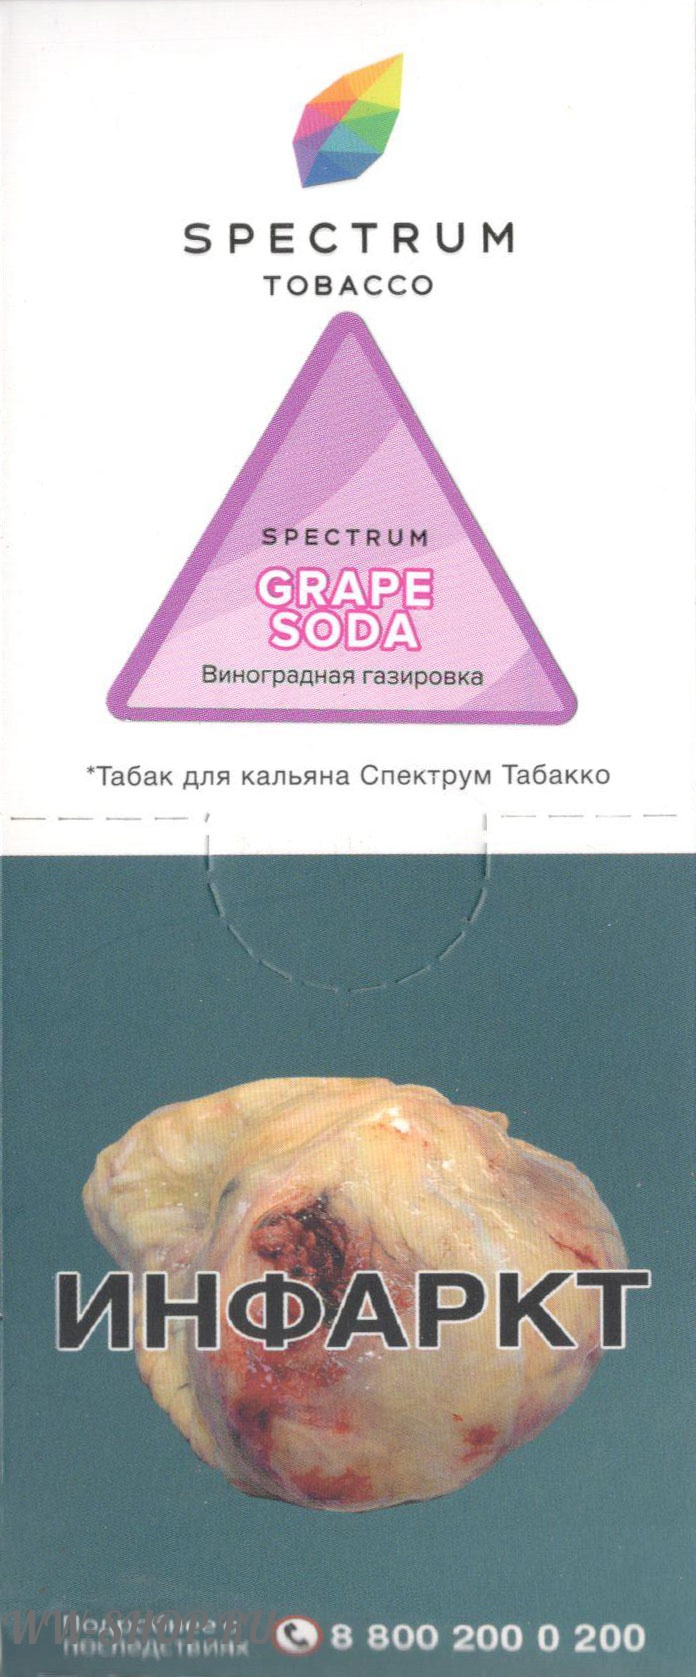 spectrum- виноградная газировка (grape soda) Балашиху